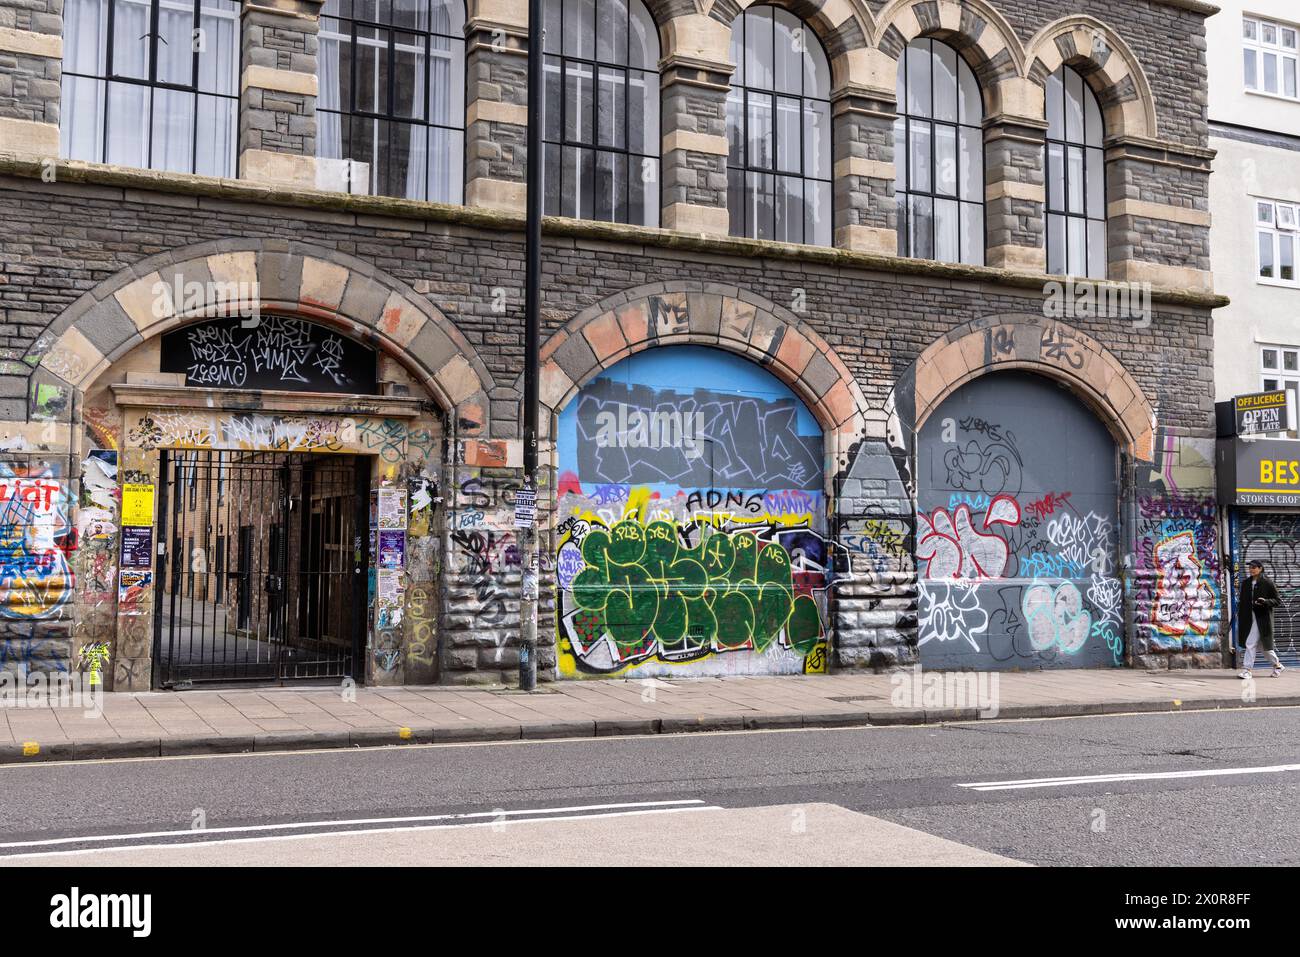 Arte di strada contemporanea - graffiti urbani sulle pareti in Gloucester Road, Stokes Croft, Bristol, Inghilterra, Regno Unito Foto Stock